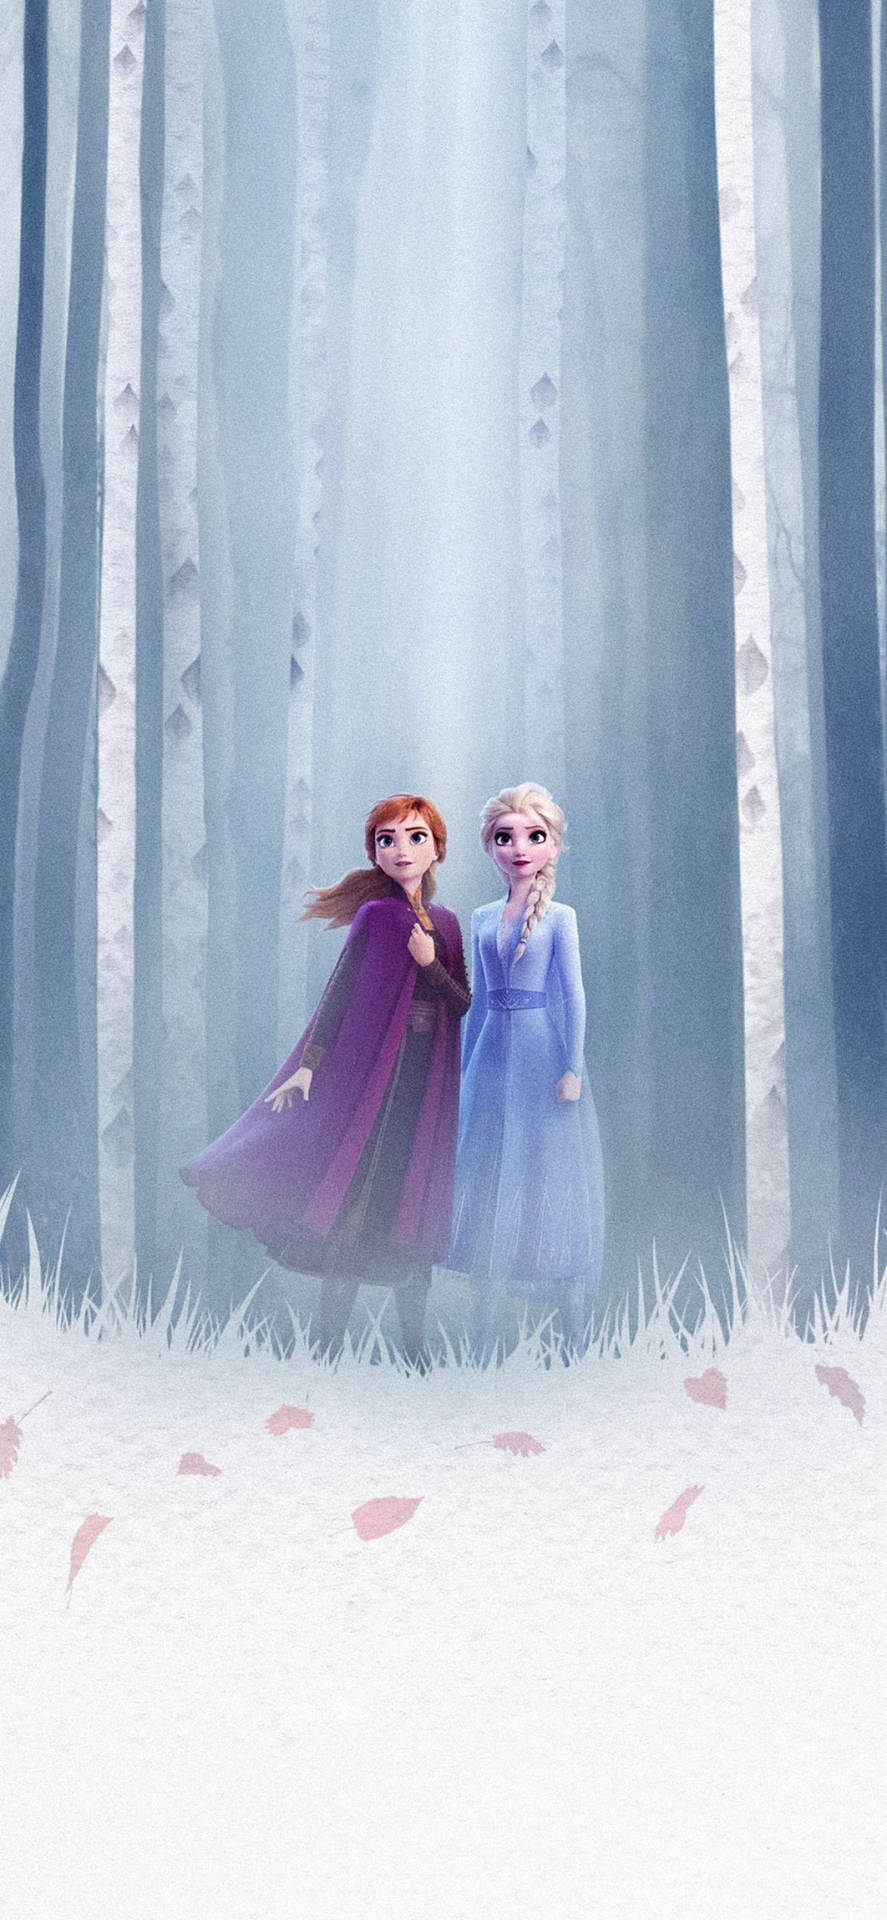 Elsa & Anna In The Woods Frozen 2 Wallpaper